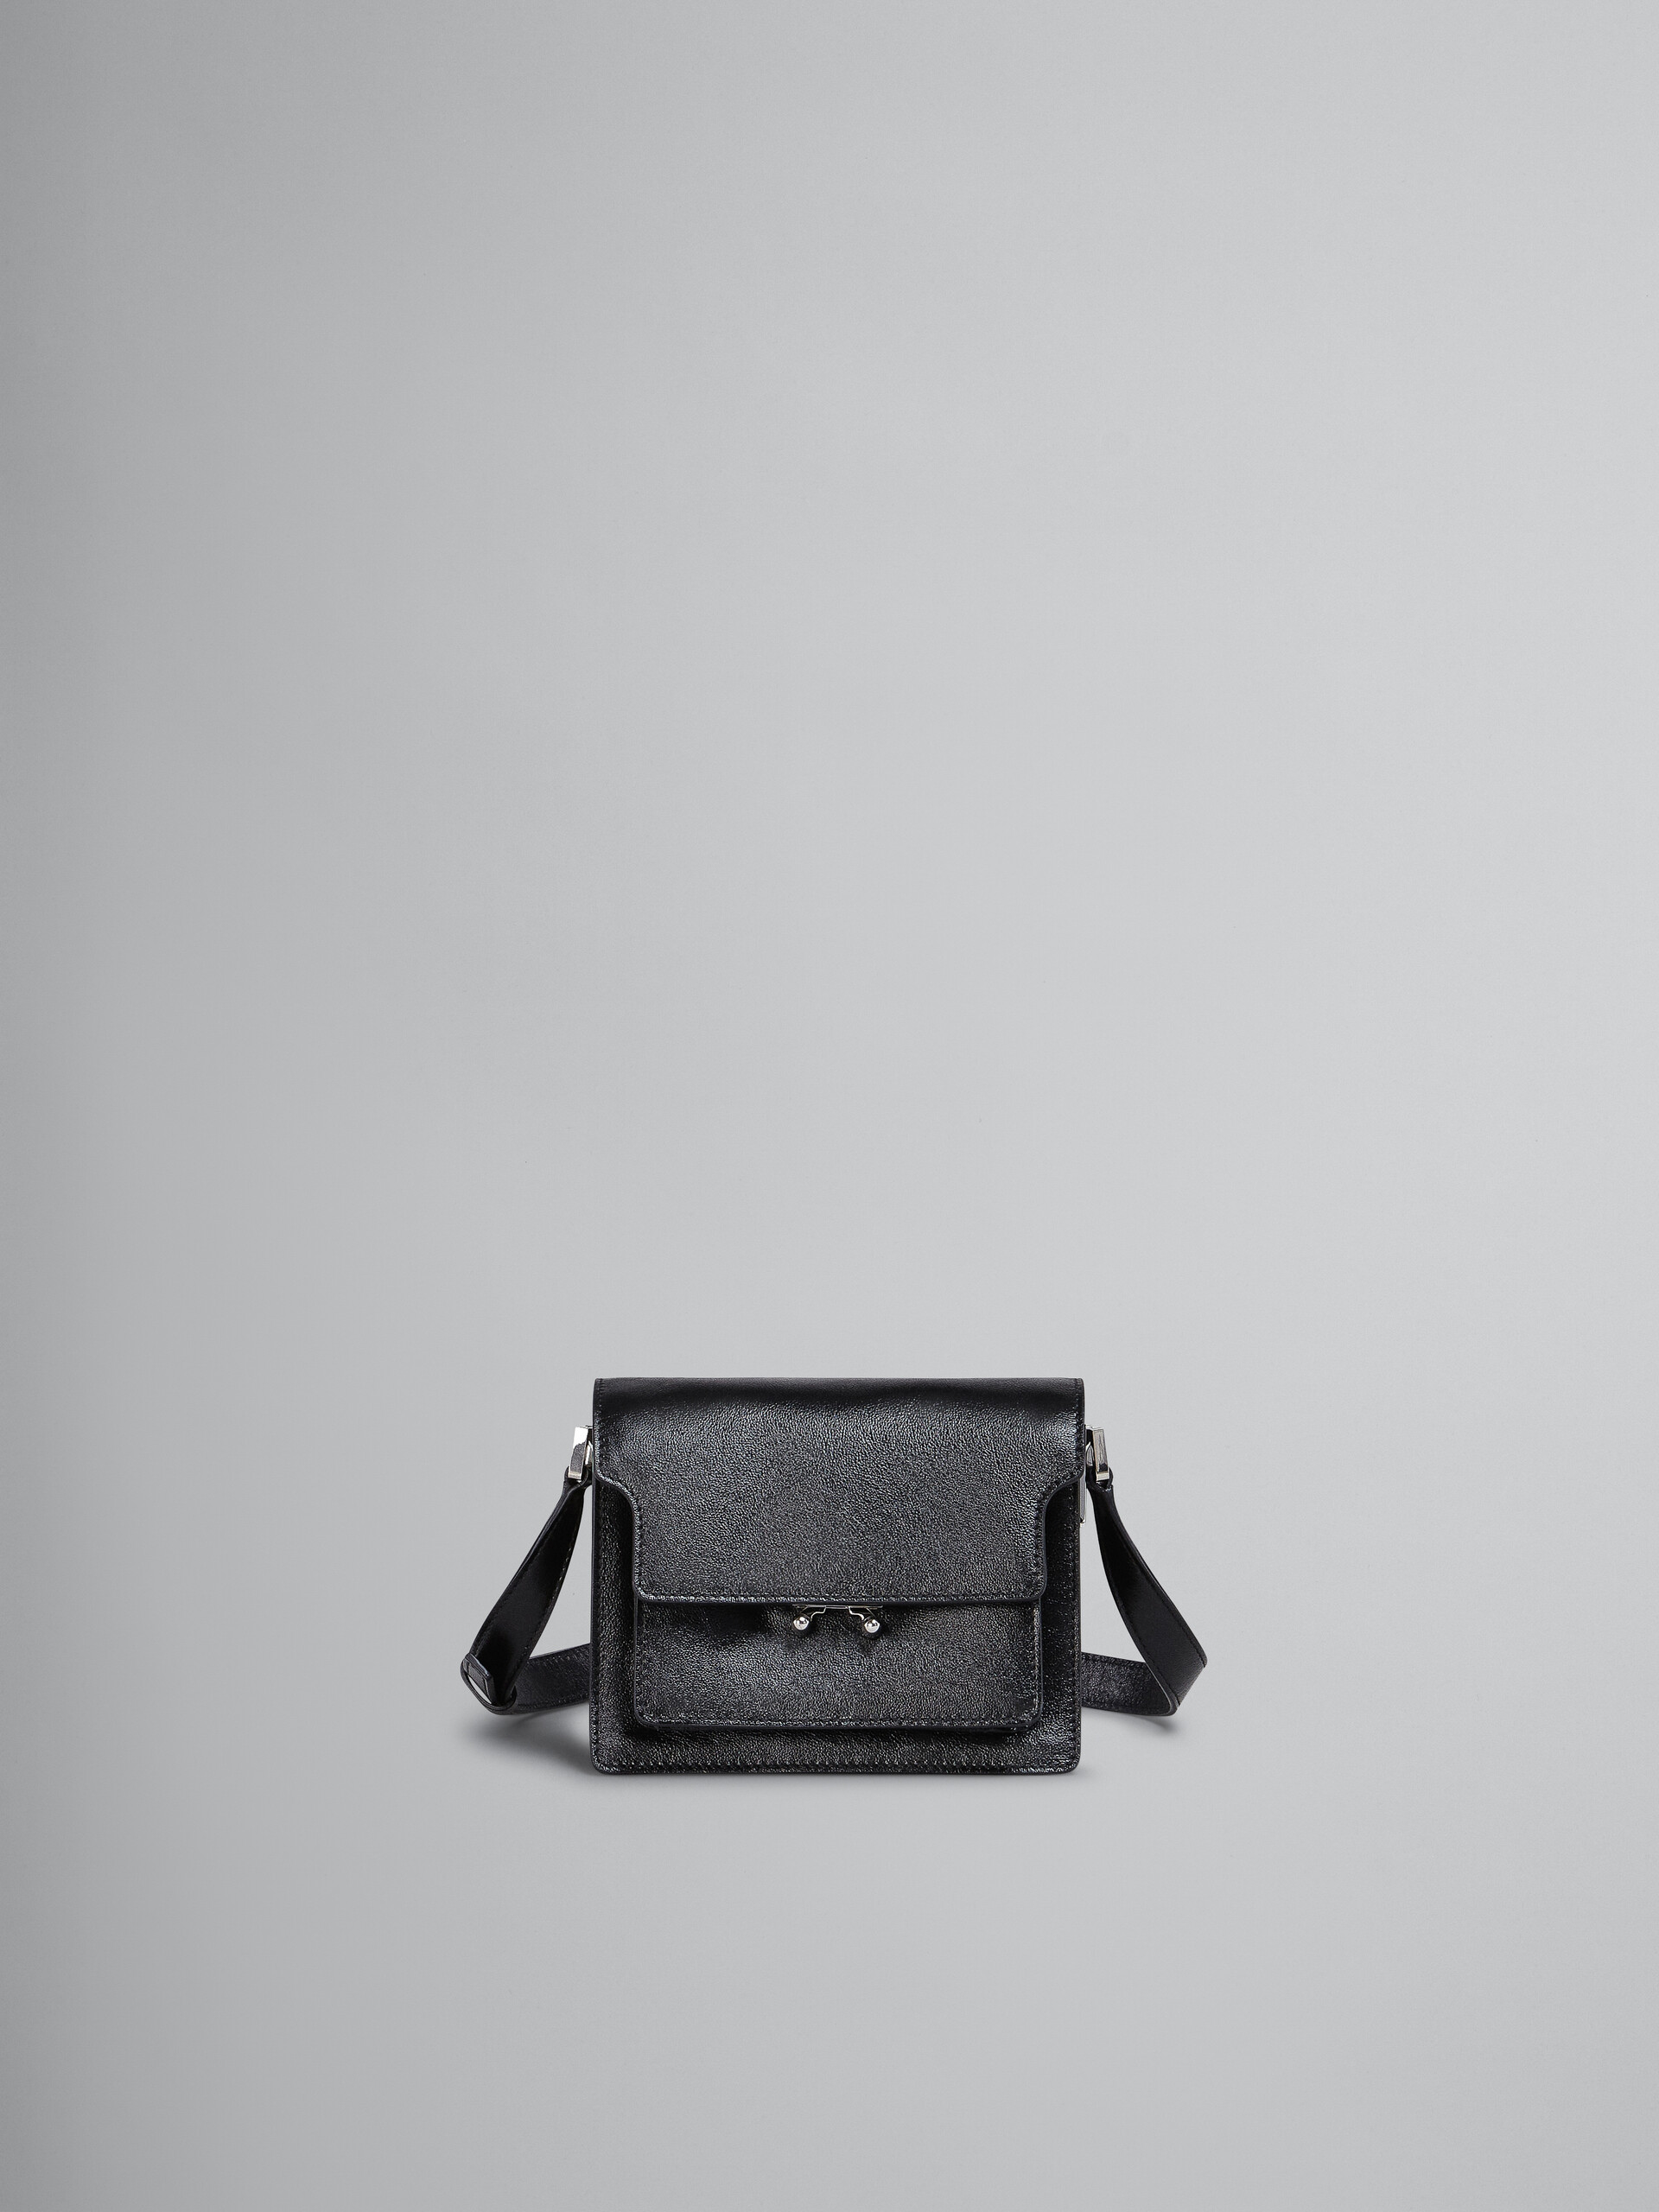 Mini-sac Trunk Soft en cuir noir - Sacs portés épaule - Image 1